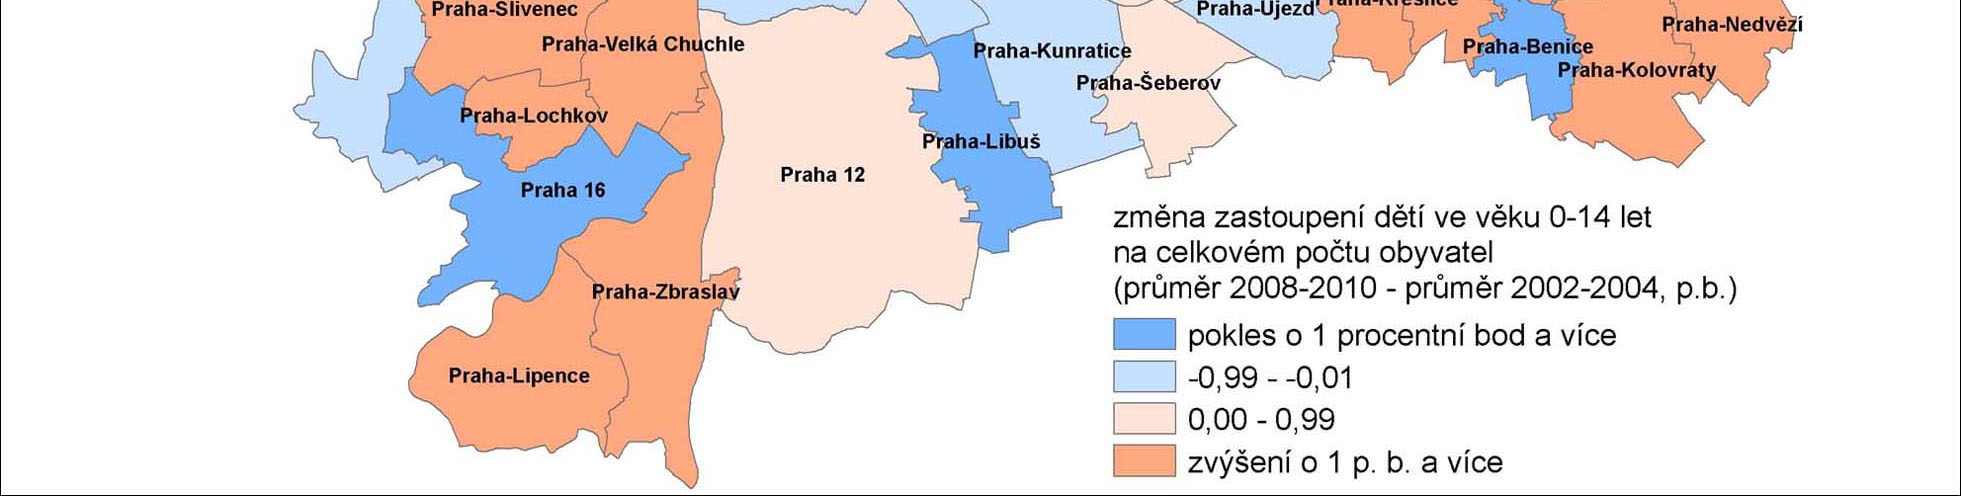 Kartogram 1.1 Změna podílu dětí ve věku -14 let v městských částech Prahy v letech 2-1 Osob ve věku 15-29 let je 19 % celkového počtu s mírnou tendencí k poklesu.